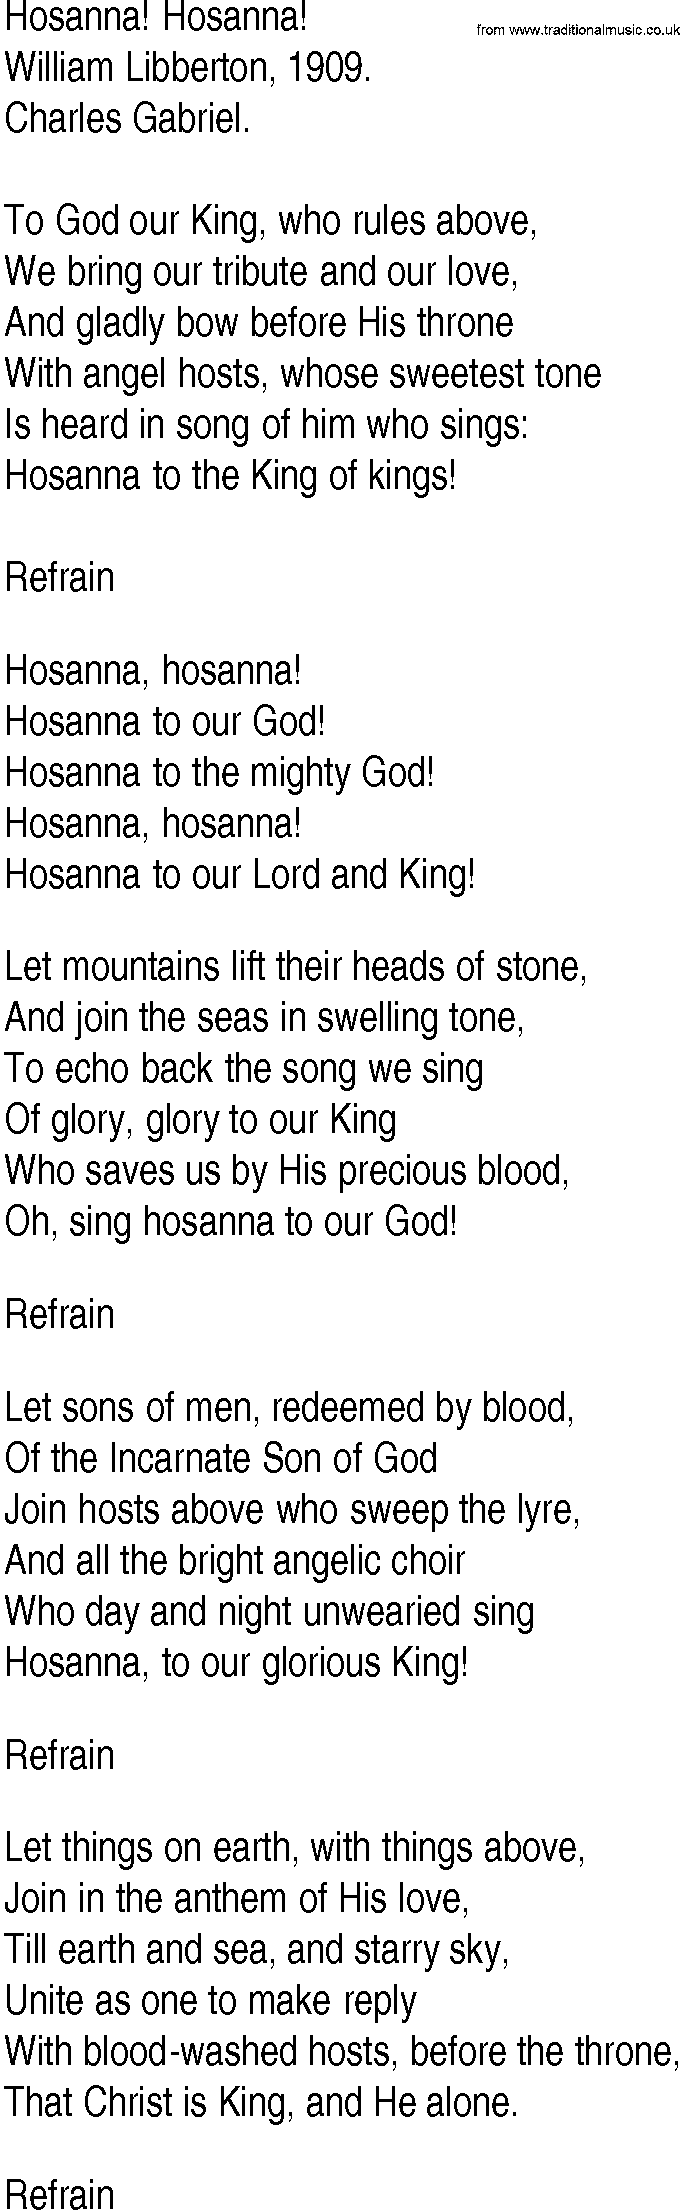 Hymn and Gospel Song: Hosanna! Hosanna! by William Libberton lyrics